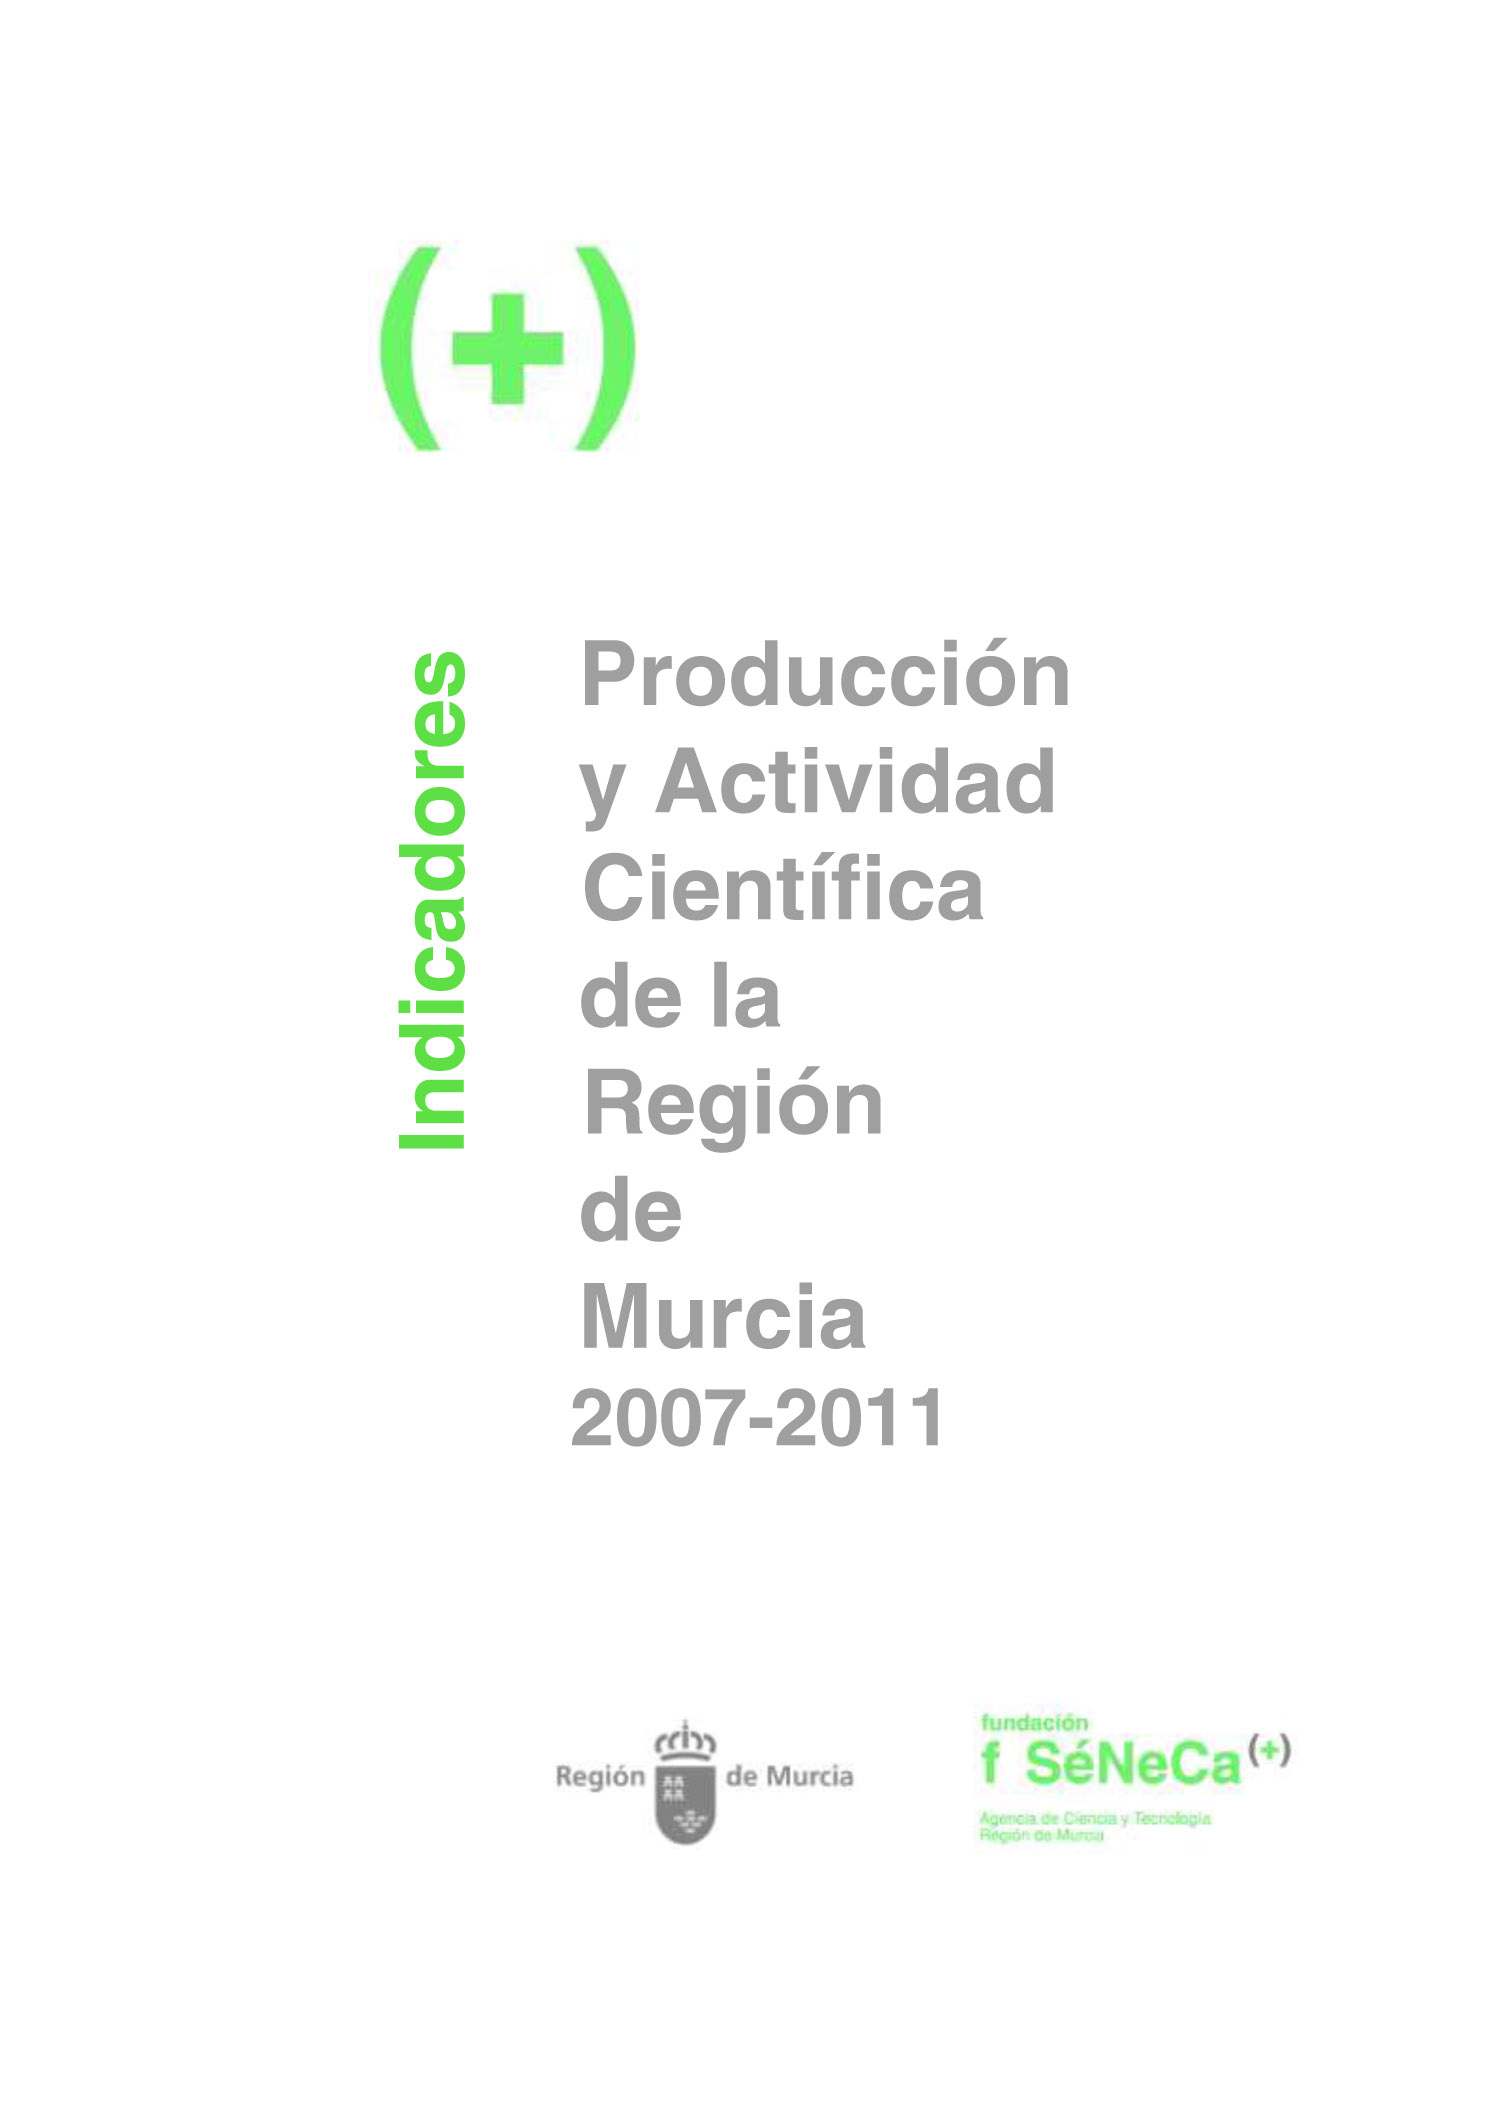 Indicadores de Producción Científica de la Región de Murcia 2007-2011